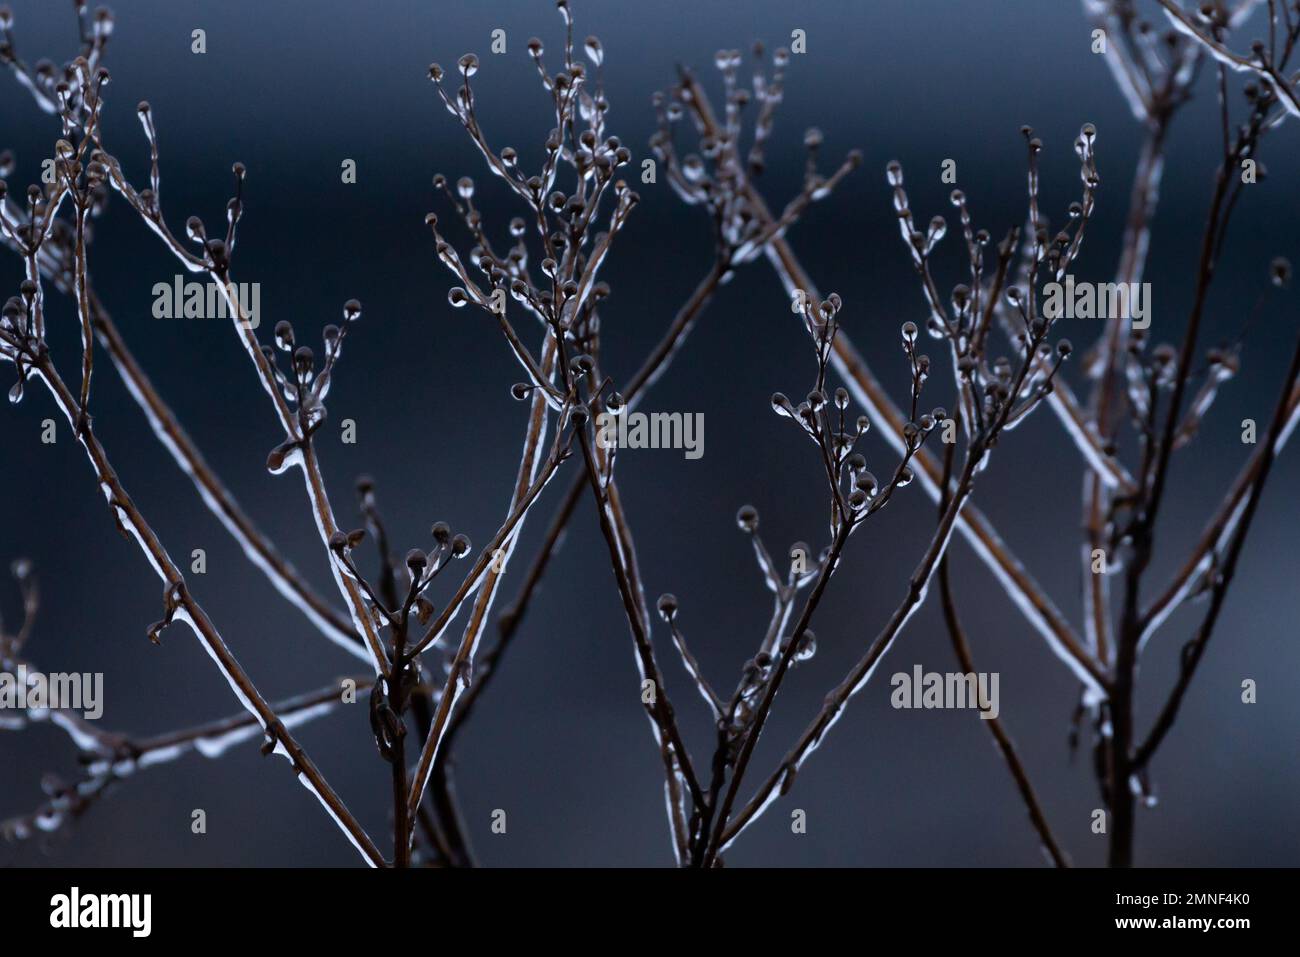 Fenomeno meteorologico raro quando la pianta diventa ghiacciata. Gelata bellezza in inverno Foto Stock